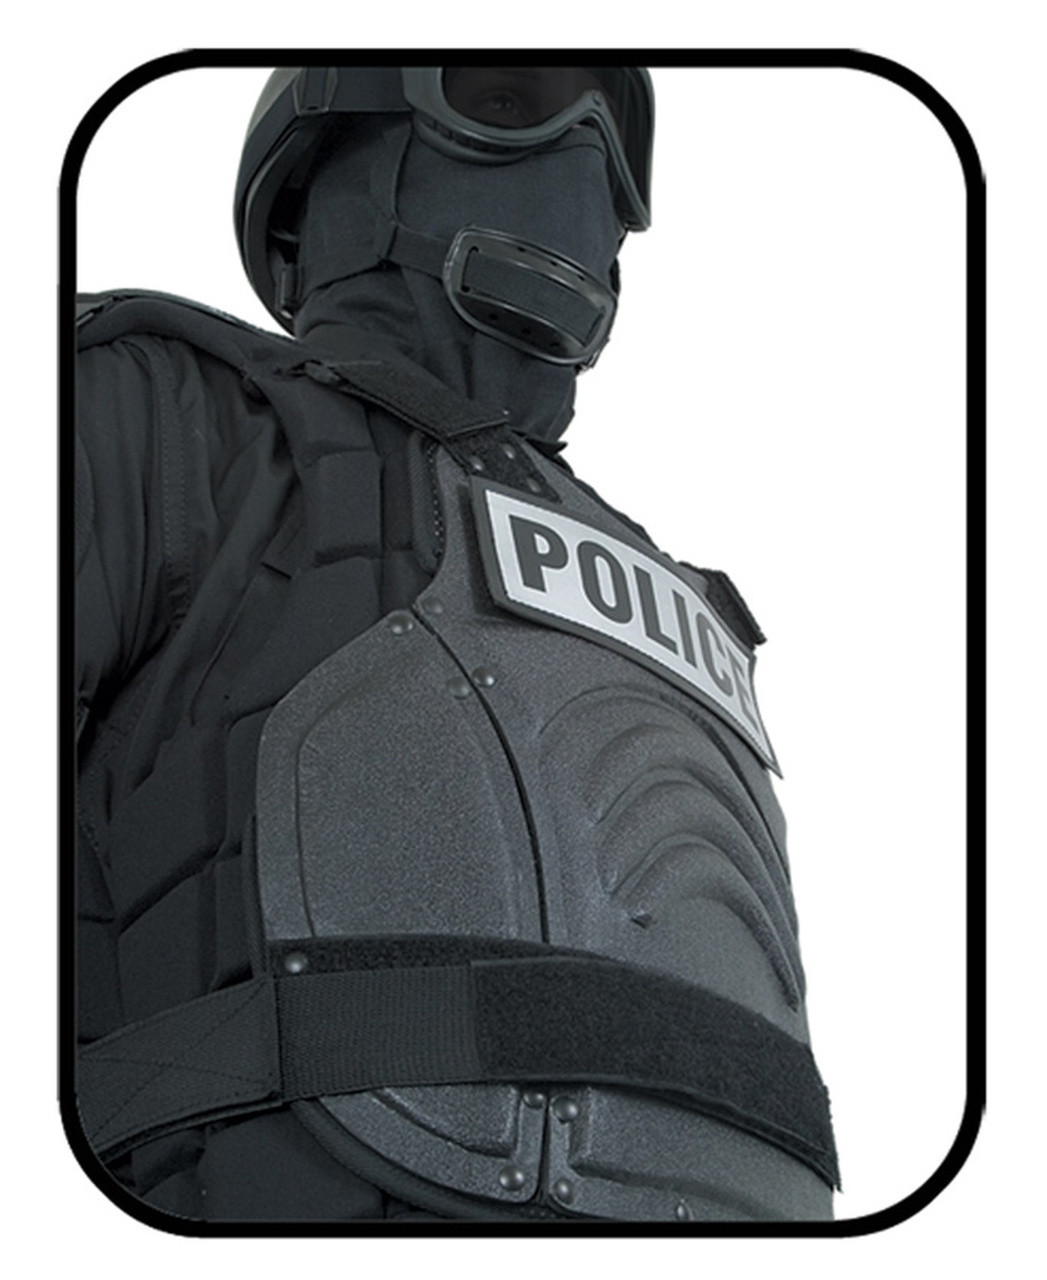 Damascus FX-1 Flex-Force Law Enforcement Riot Gear Protective Suit